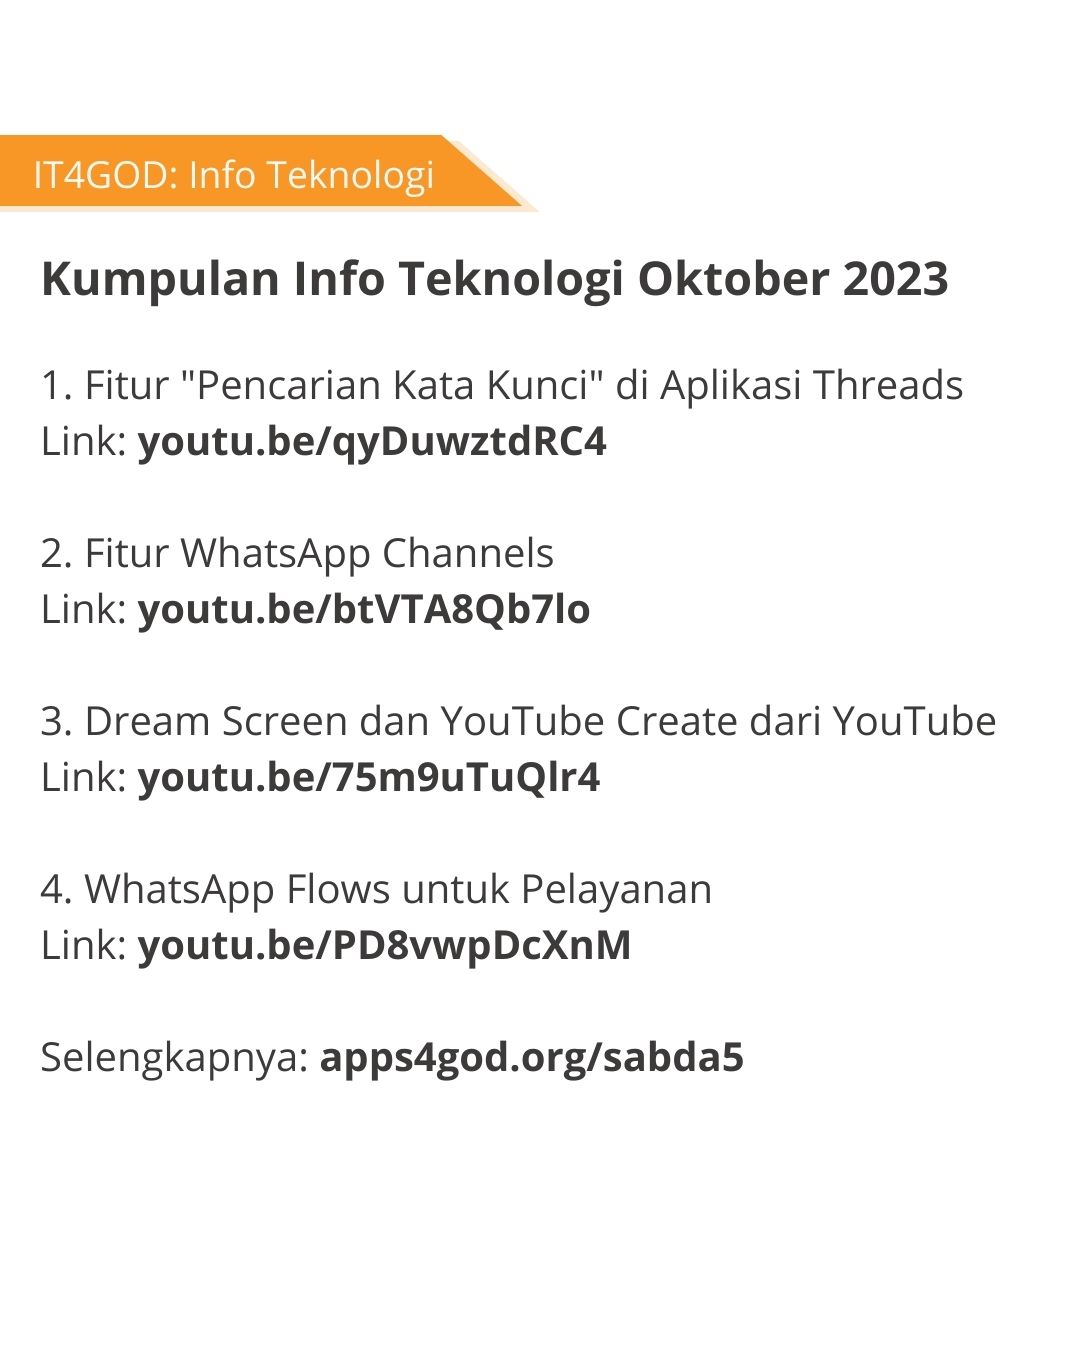 Kumpulan info teknologi Apps4GOD Oktober 2023.